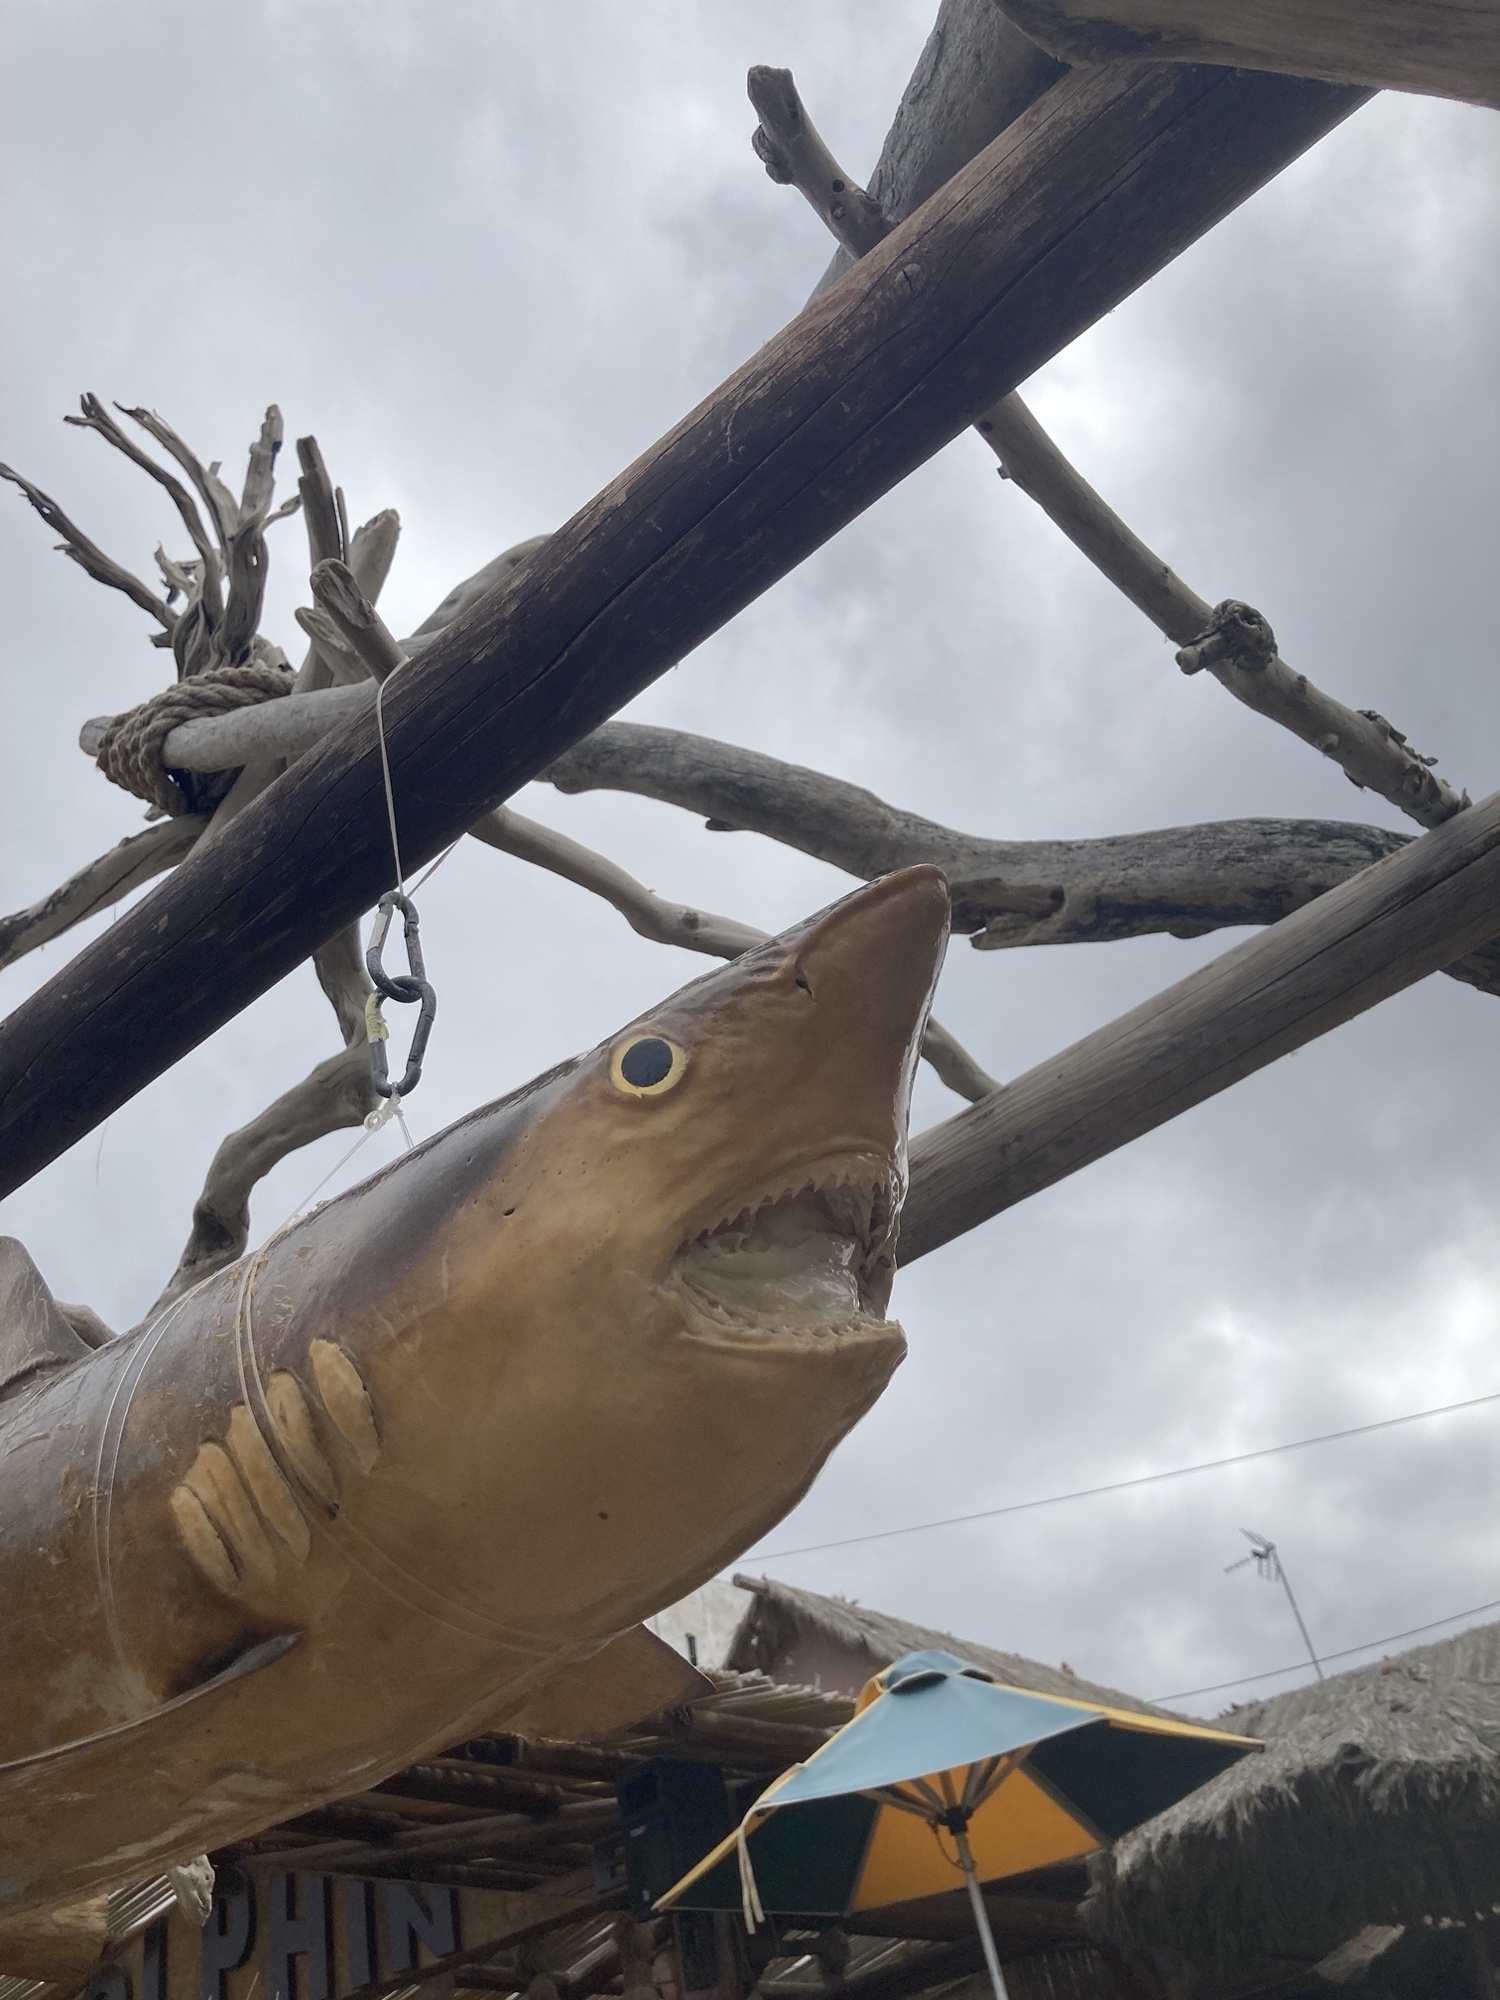 an einer Holzkonstruktion hängt ein konservierter Hai, Kiemen und Zahnreihen sind gut zu erkennen